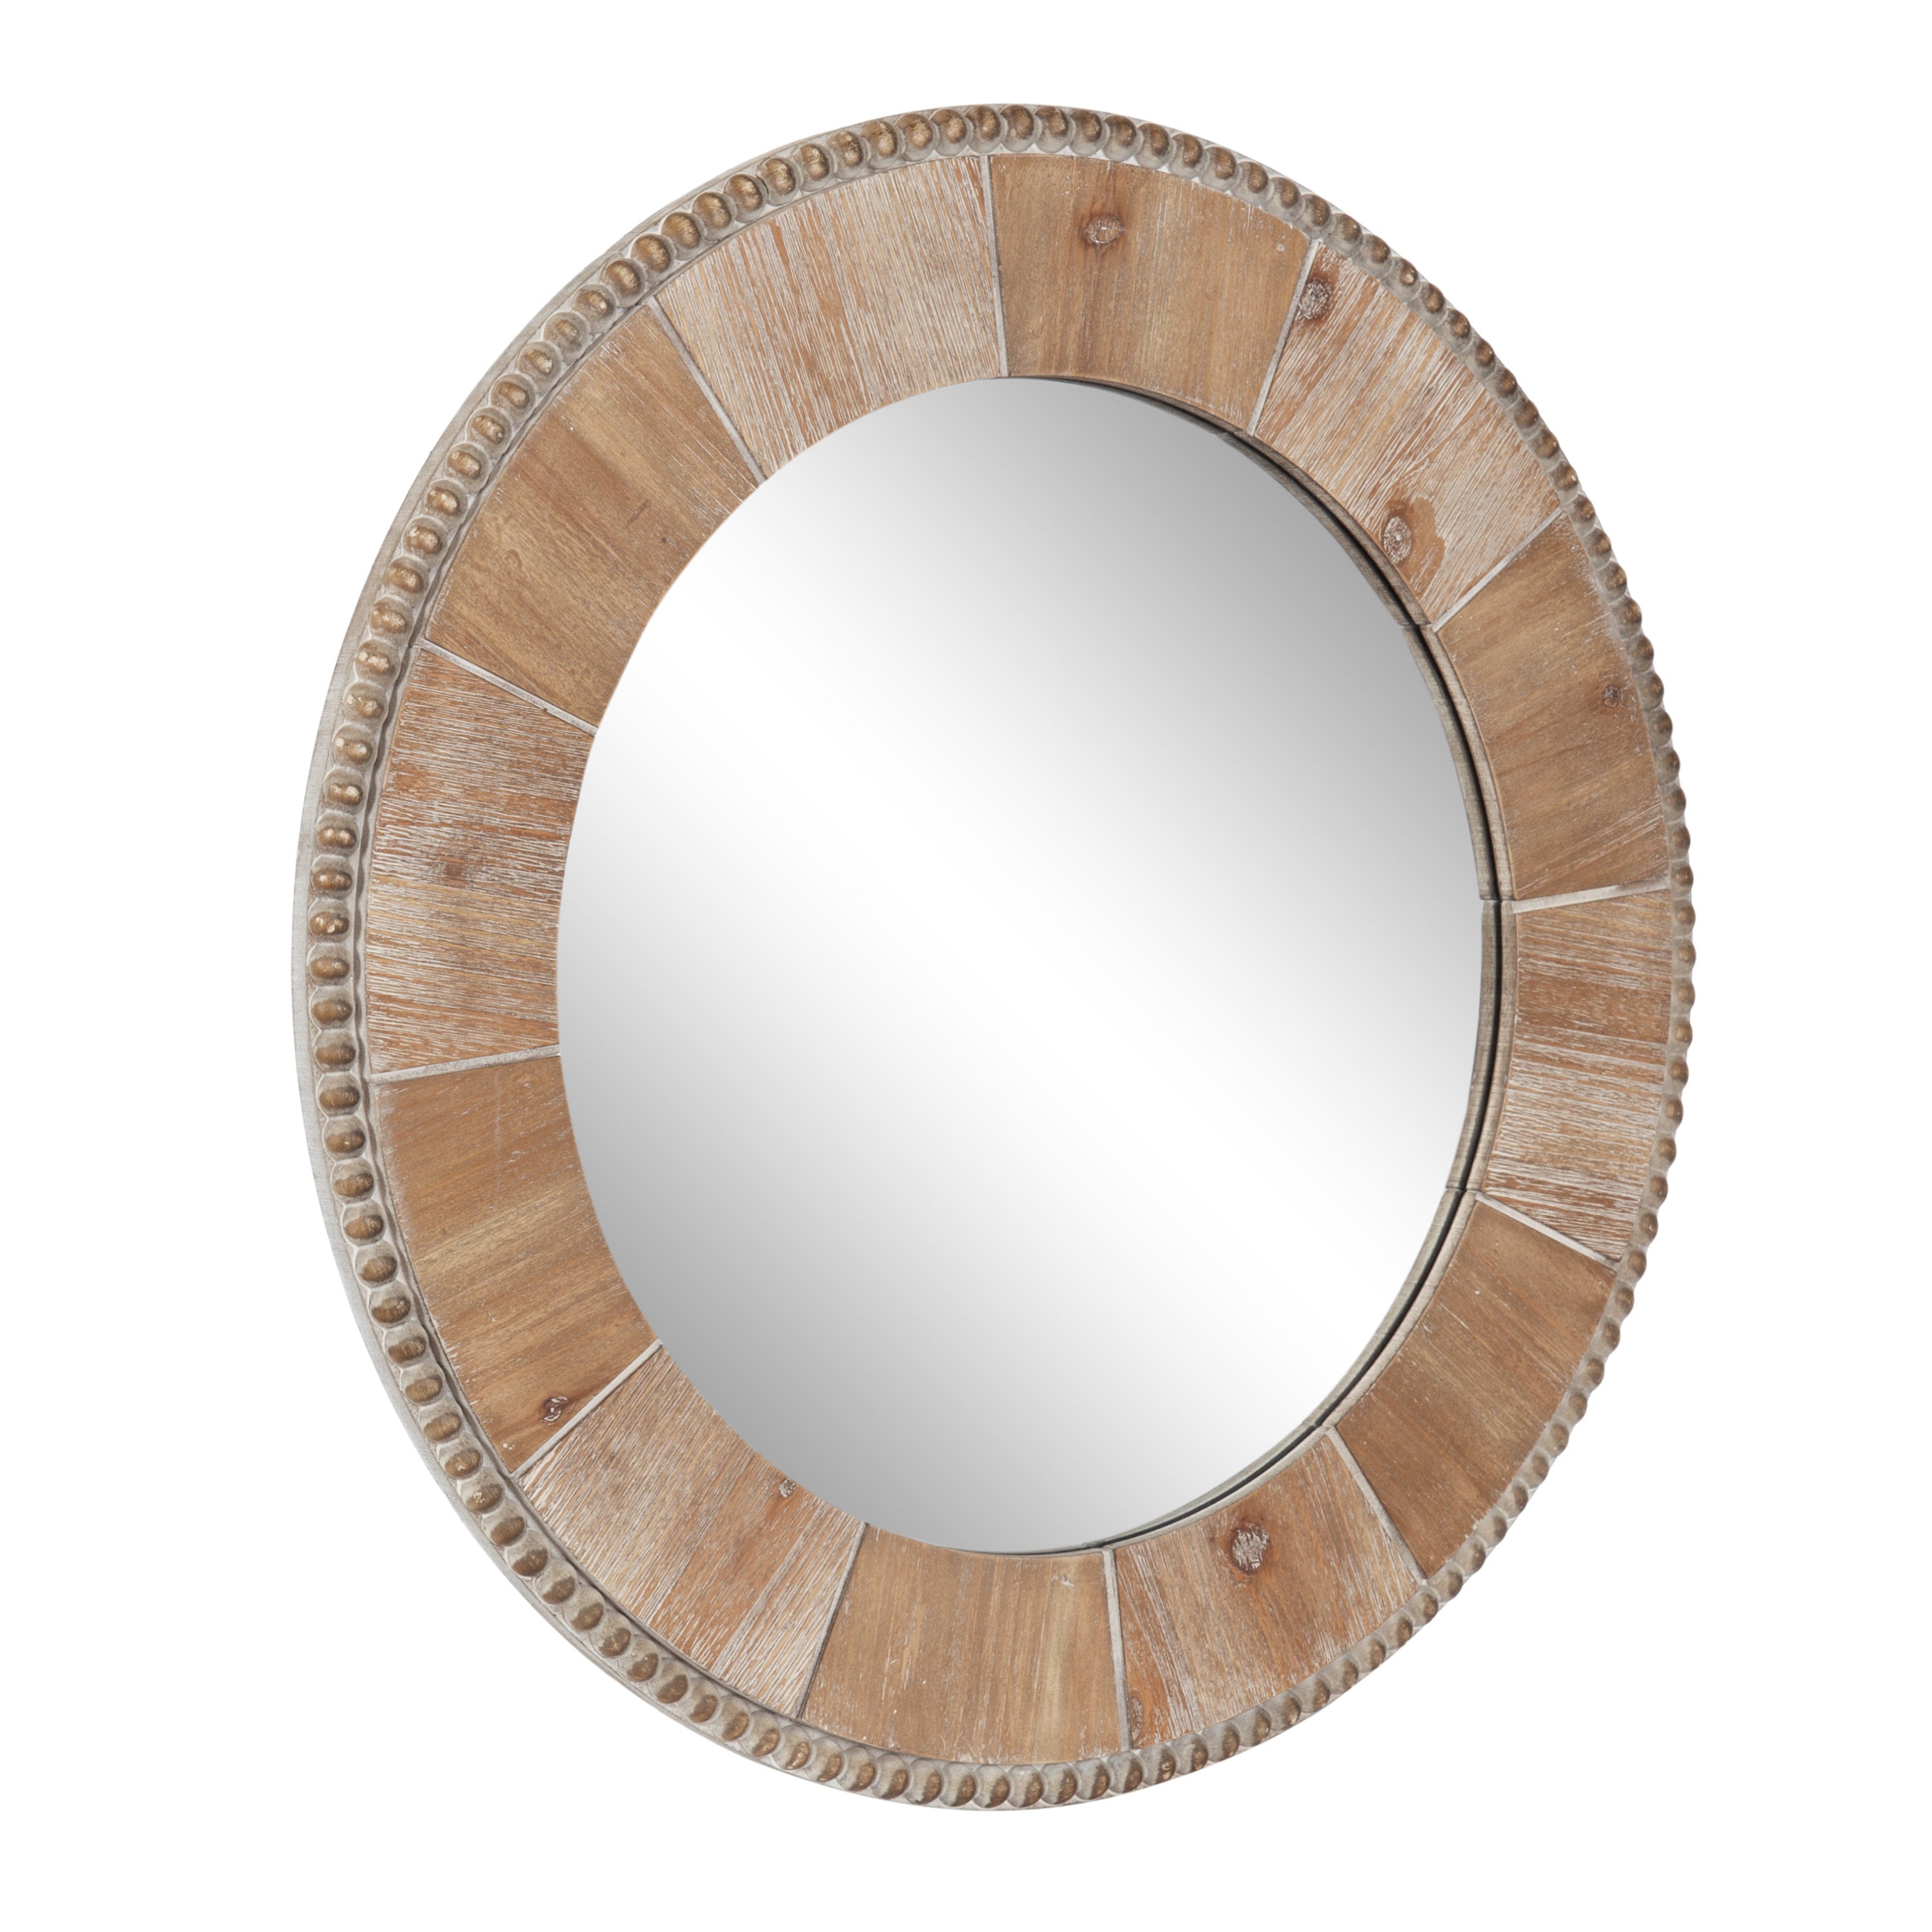 Calona Pieced Decorative Round Mirror